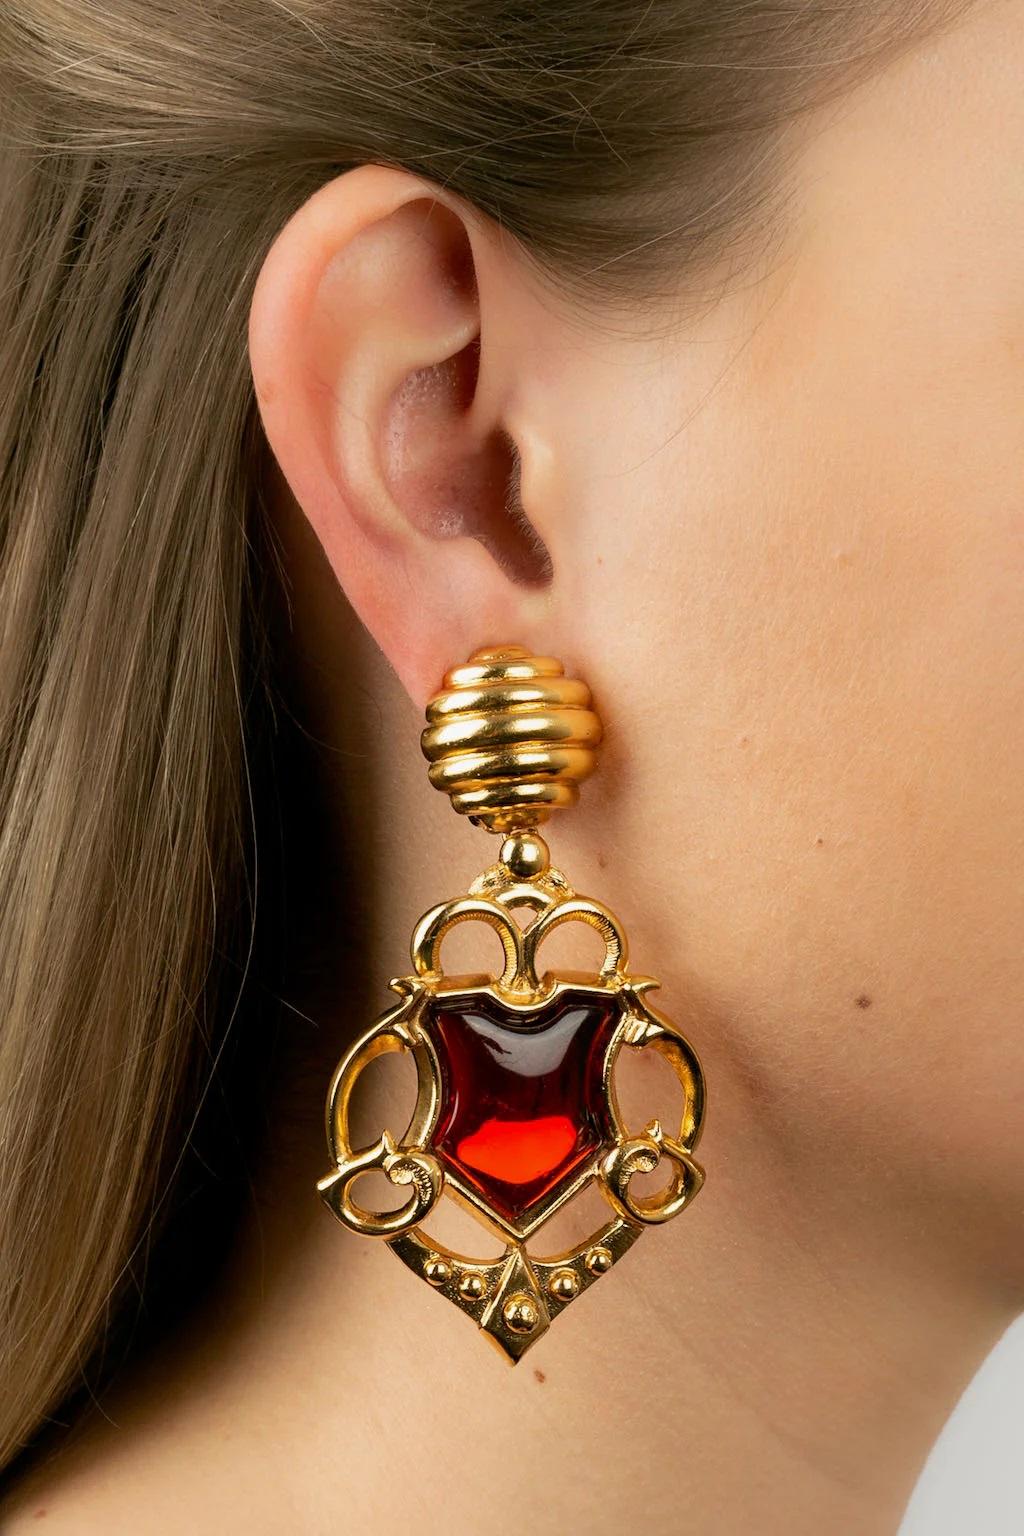 Dior - (Made in France) Lange Ohrringe mit Clips aus goldenem Metall und rotem Cabochon.

Zusätzliche Informationen:
Abmessungen: 8,5 L cm
Zustand: Sehr guter Zustand
Verkäufer-Referenznummer: BO139